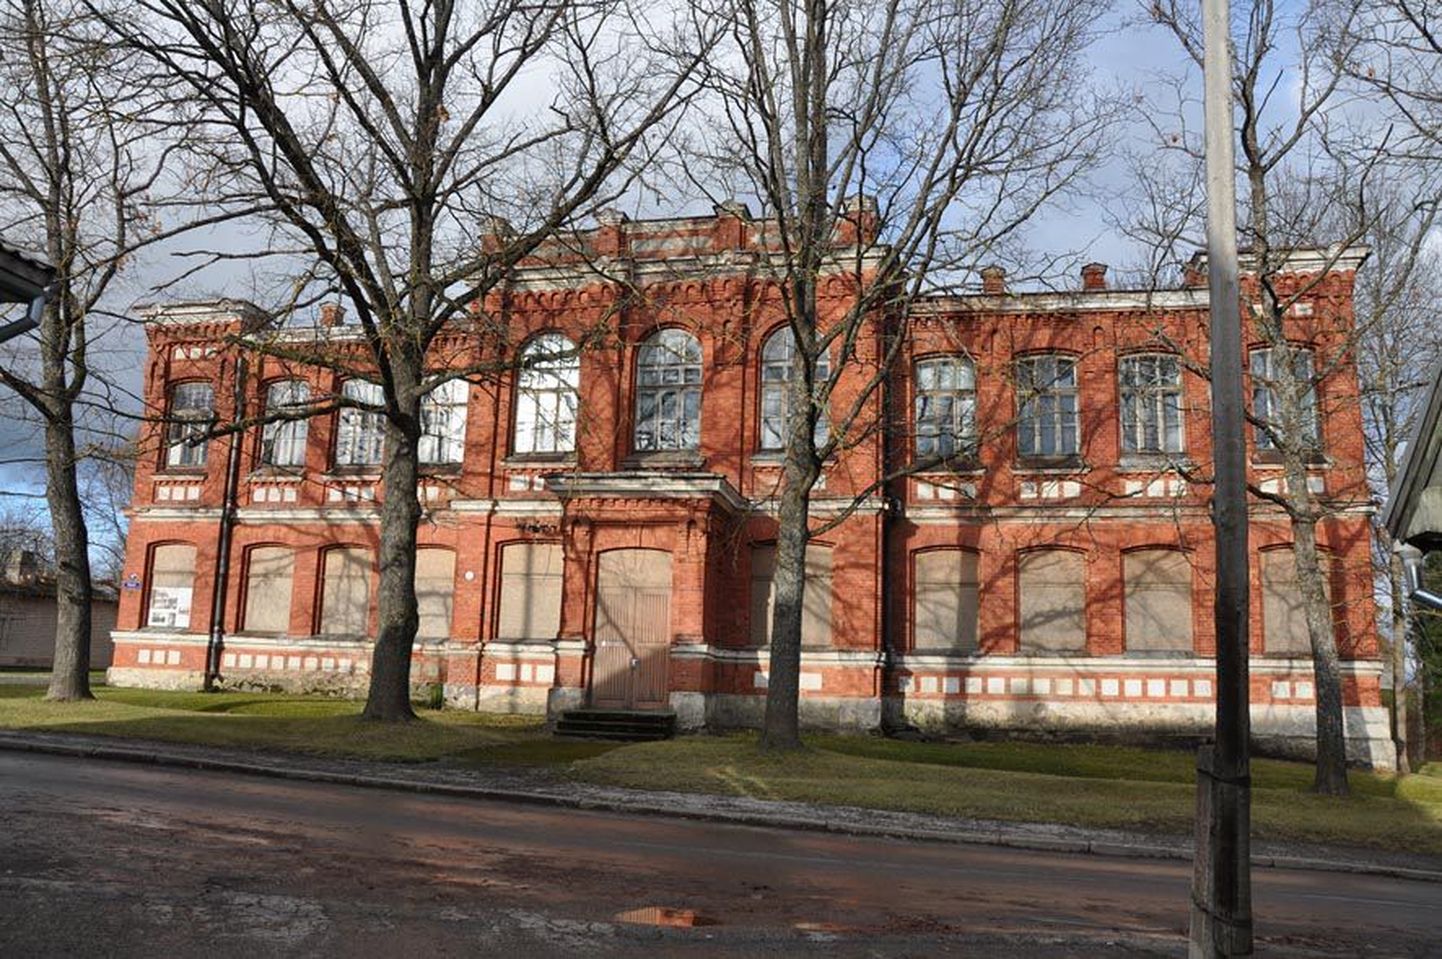 Kool asus selles majas kuni 1963. aastani, mil valmis uus koolimaja Aiavilja tänavas. Hiljem tegutsesid siin pioneeride maja ja raamatukogu. Praegu seisab maja tühjalt ja laguneb. 2013